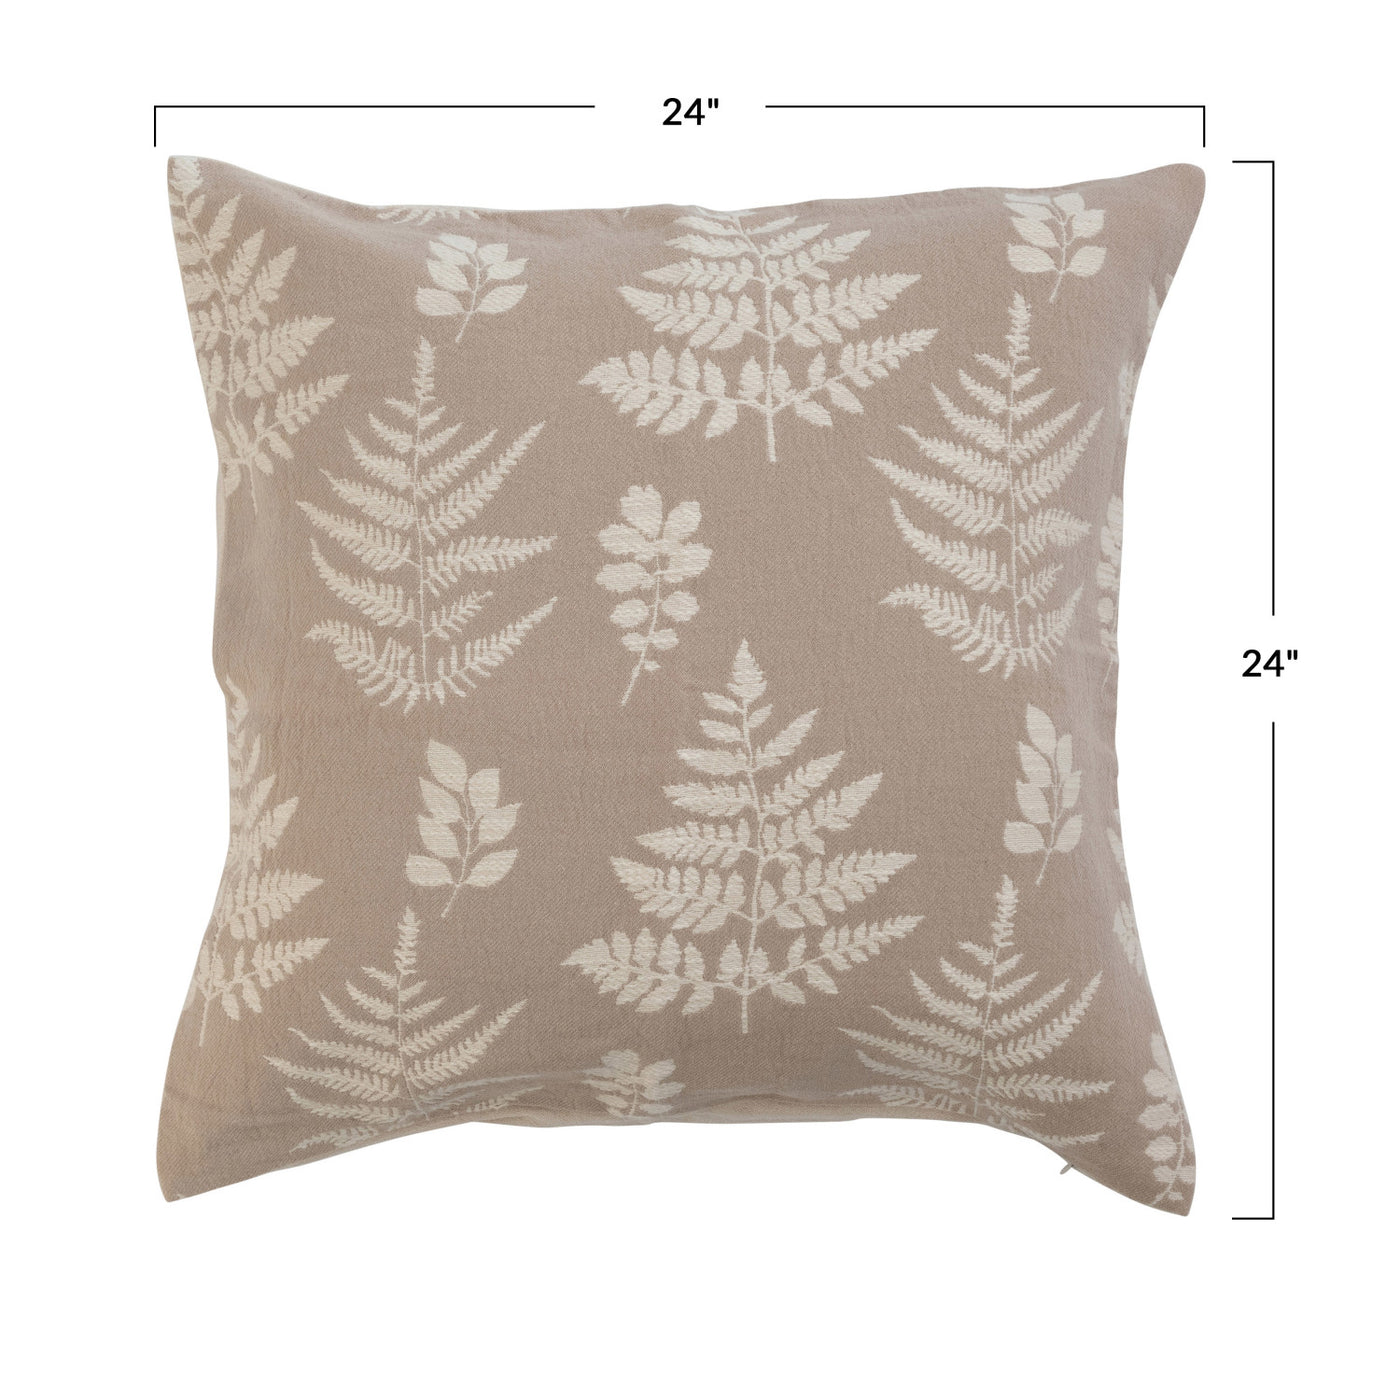 24" Woven Cotton Jacquard Pillow w/ Fern Print & Beige